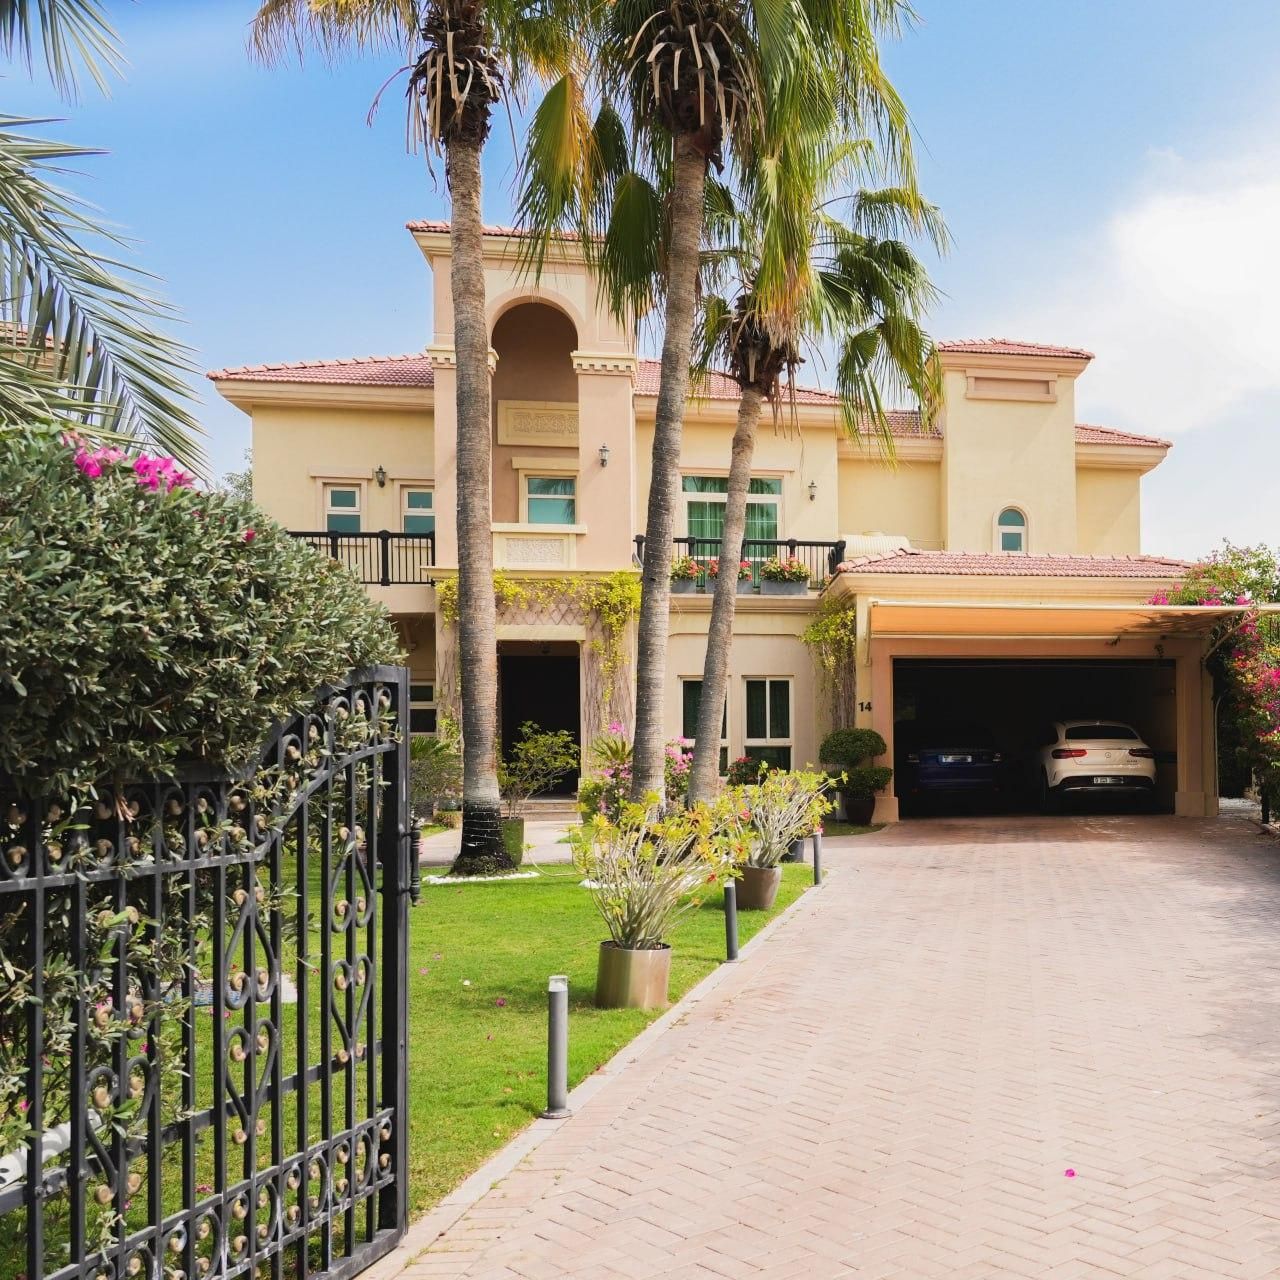 Villa in Dubai, UAE, 933 sq.m - picture 1